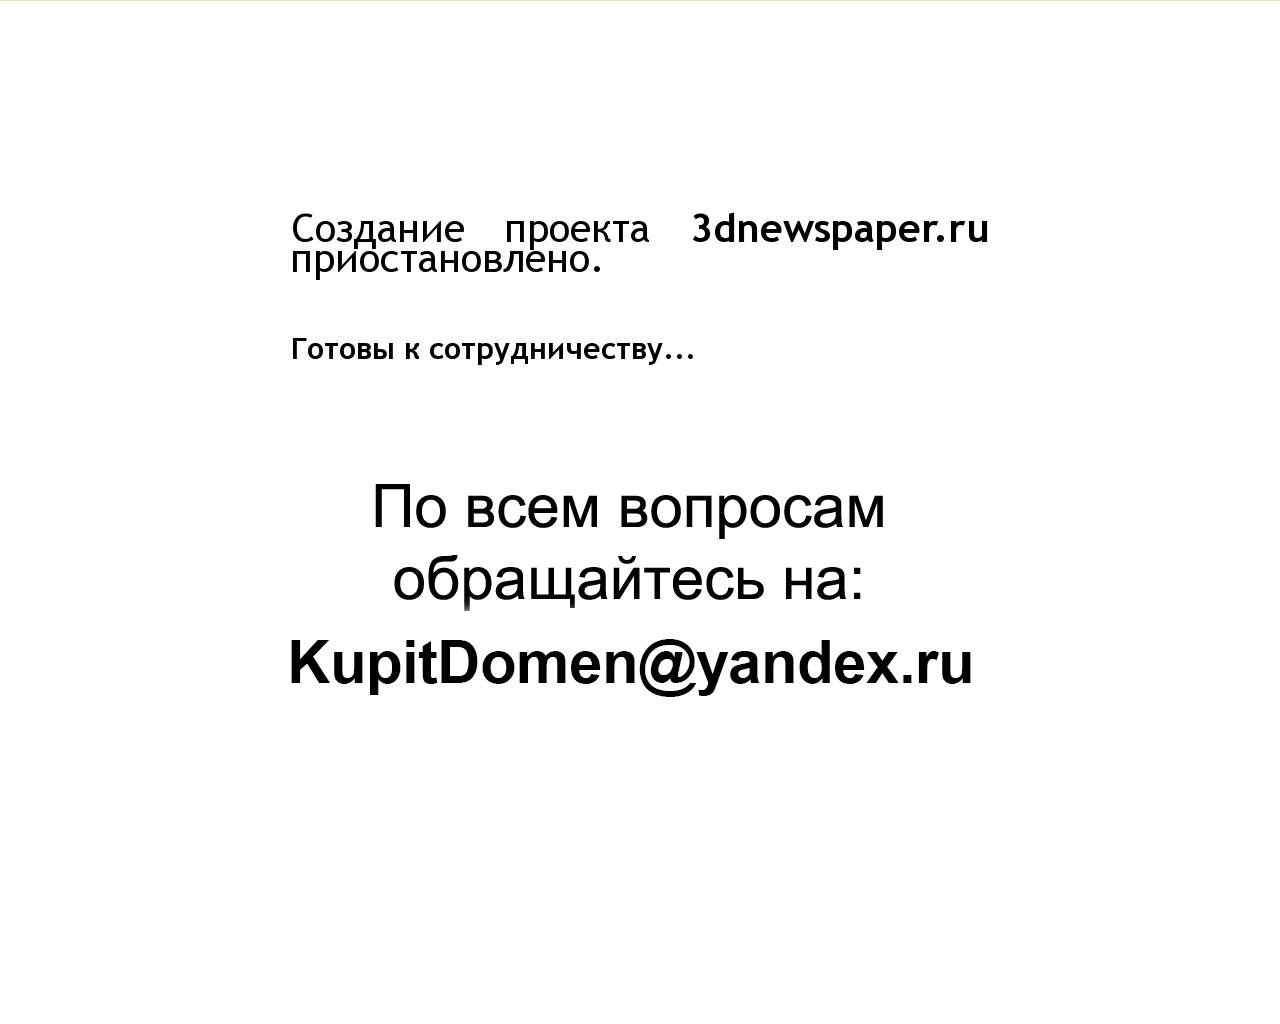 Изображение сайта 3dnewspaper.ru в разрешении 1280x1024